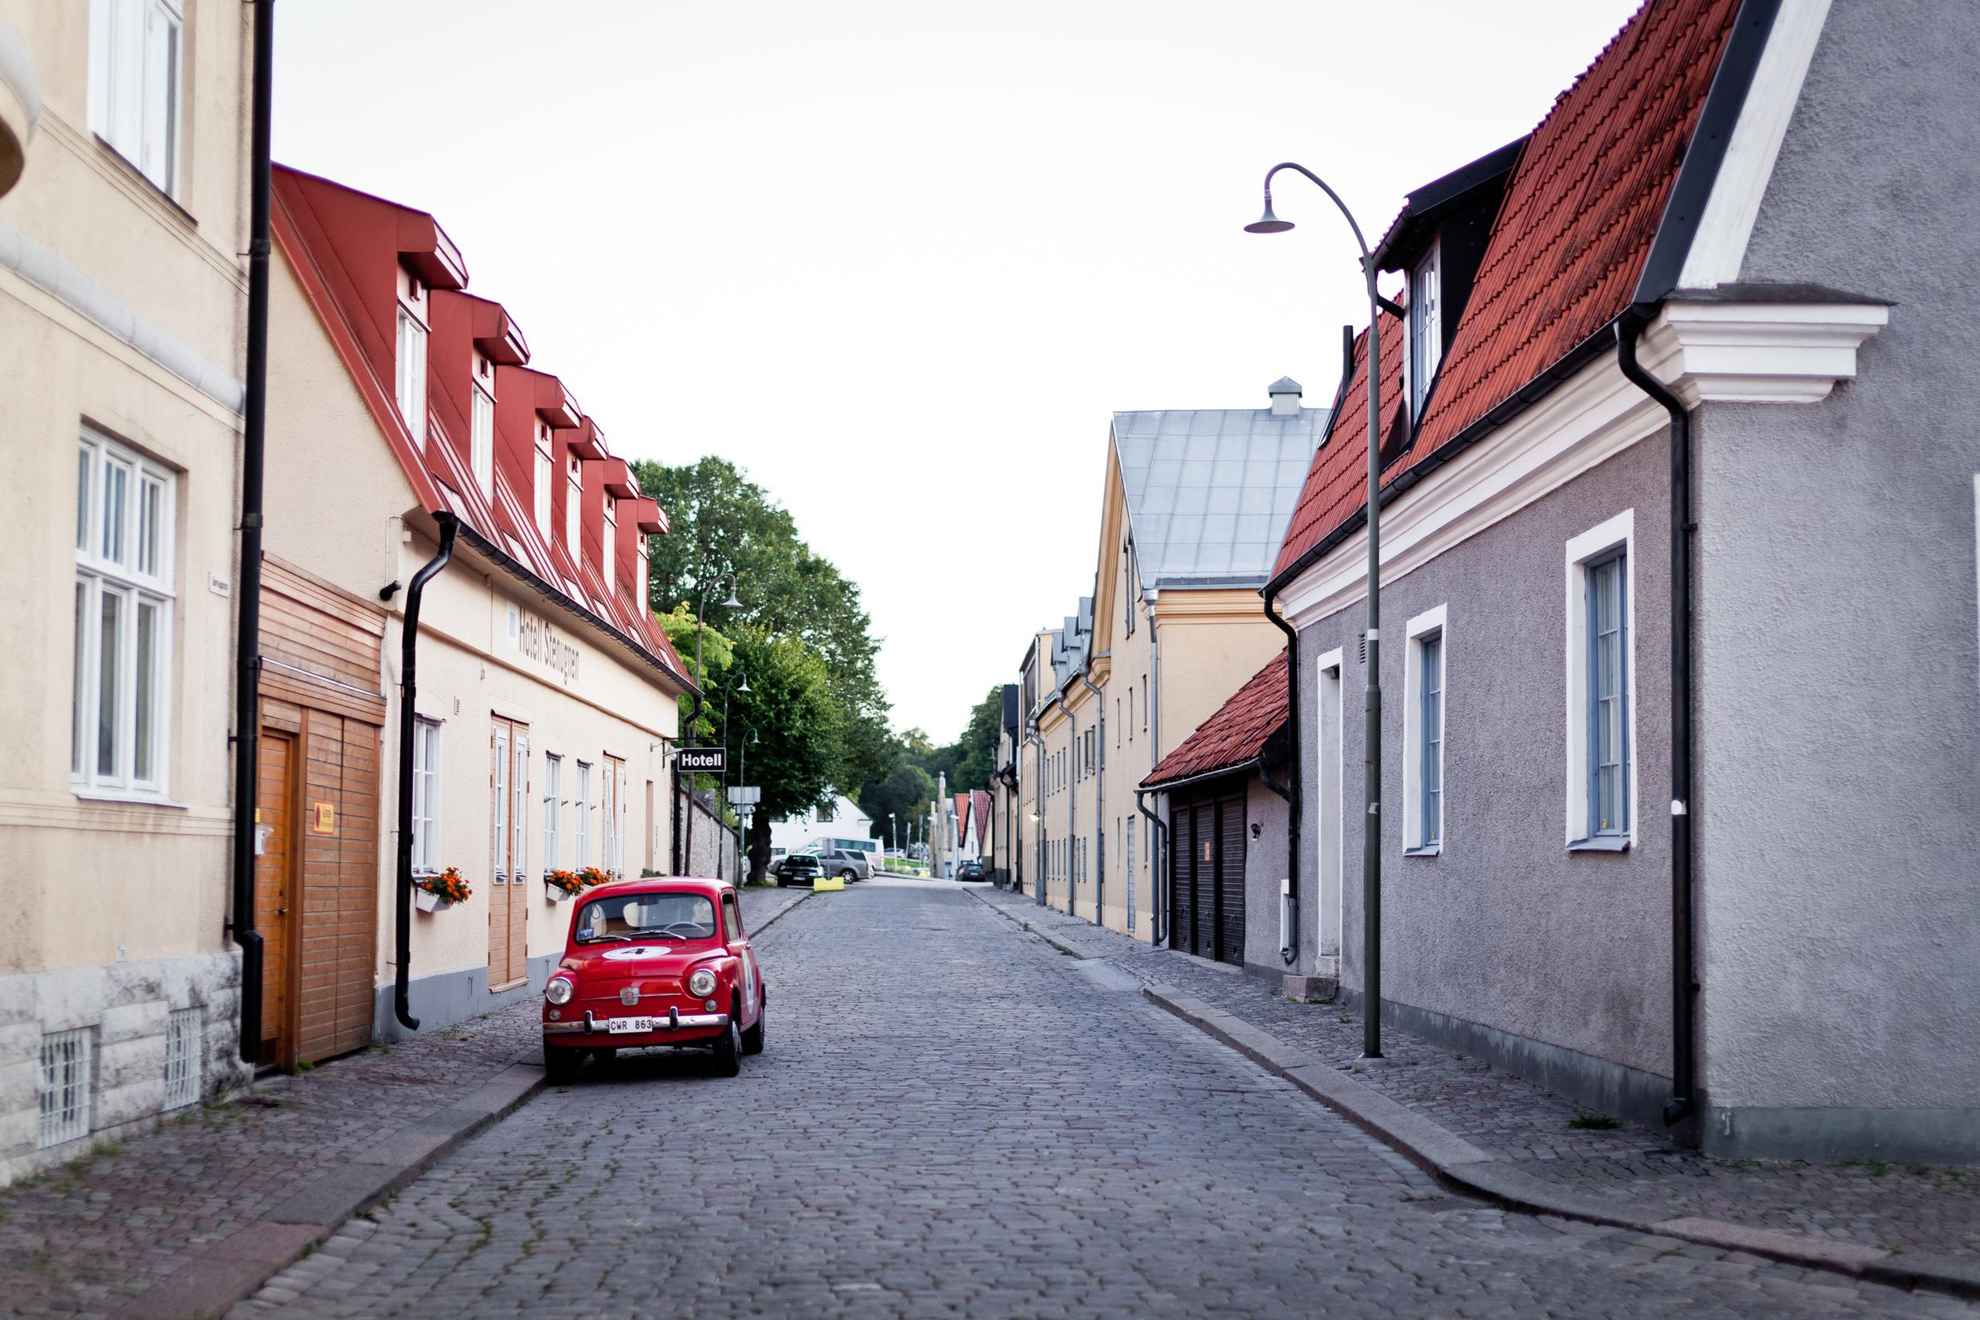 Neben den bunten Häusern Visbys. steht ein rotes Auto.